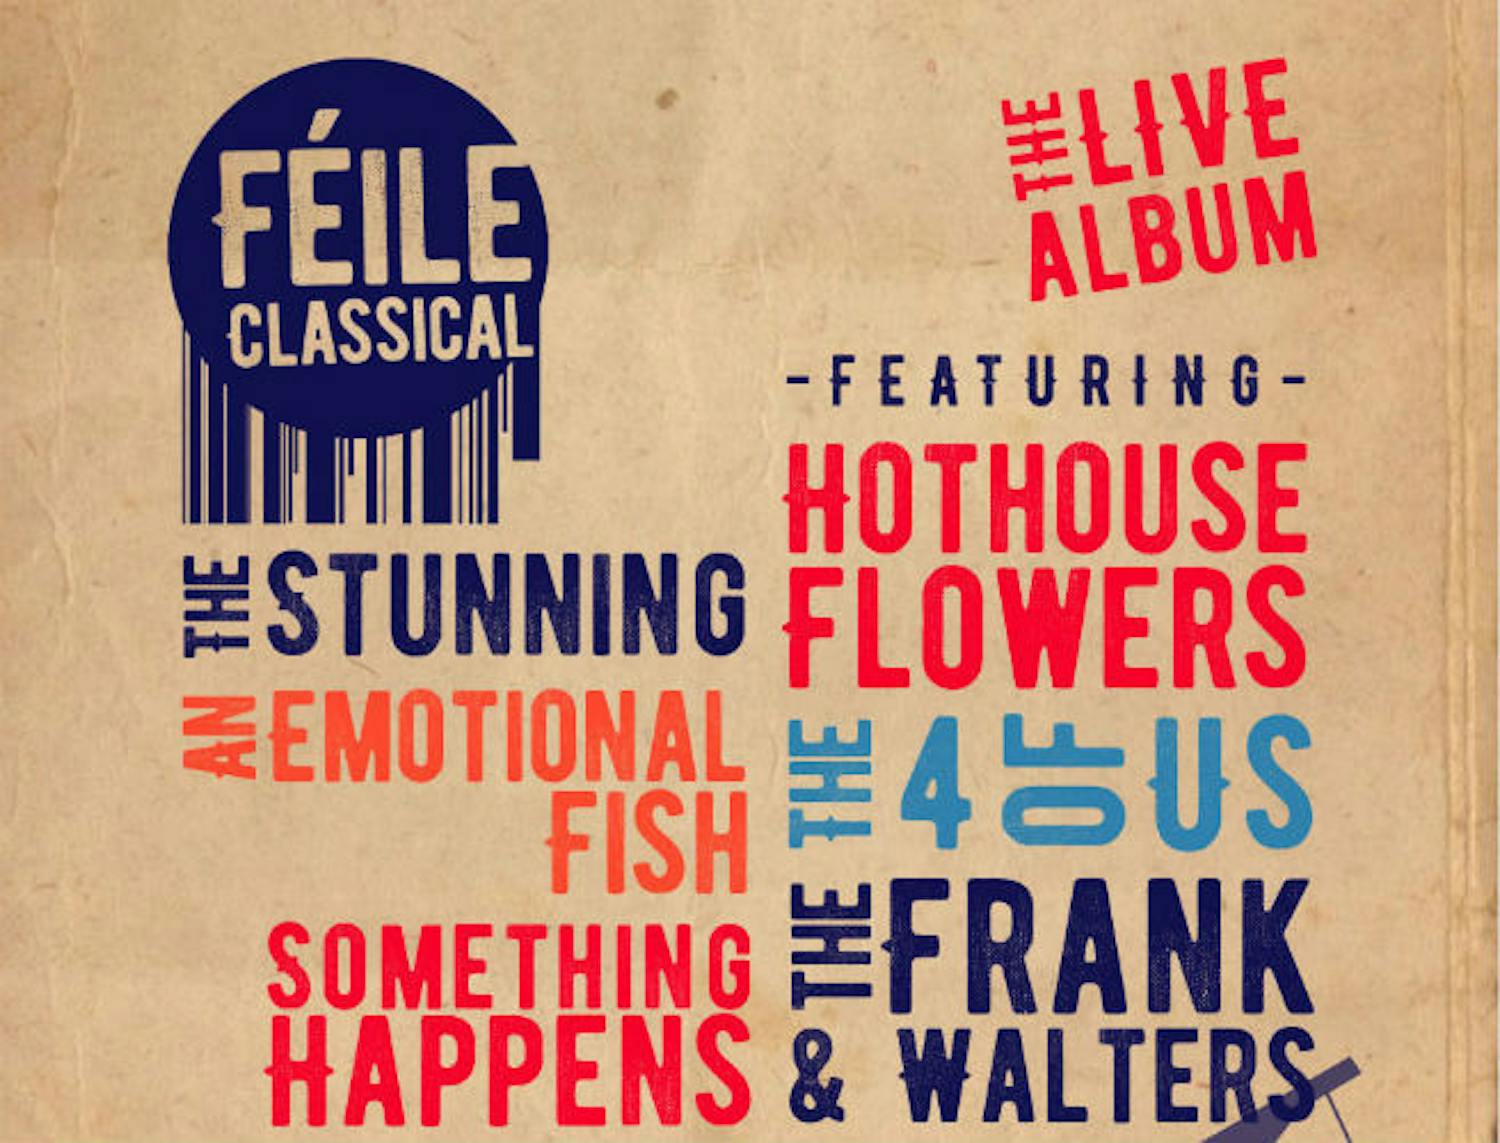 Feile Classical: The Album!!